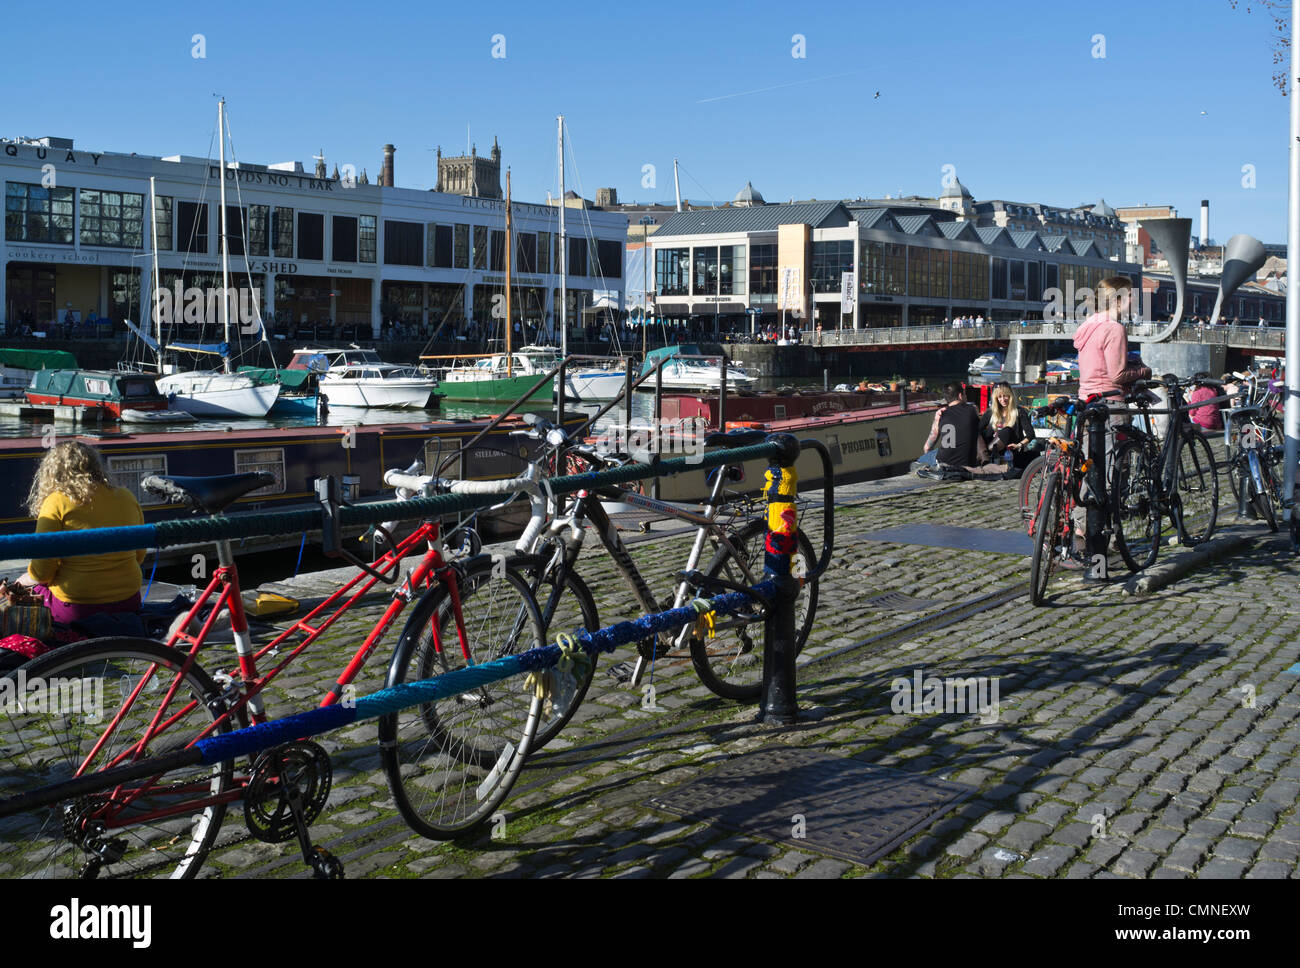 dh St Augustines erreichen BRISTOL DOCKS BRISTOL Cyclist Fahrräder geparkt Menschen entspannende Stadt Winter Sonnenschein Fahrrad Parken Fahrräder großbritannien Stockfoto